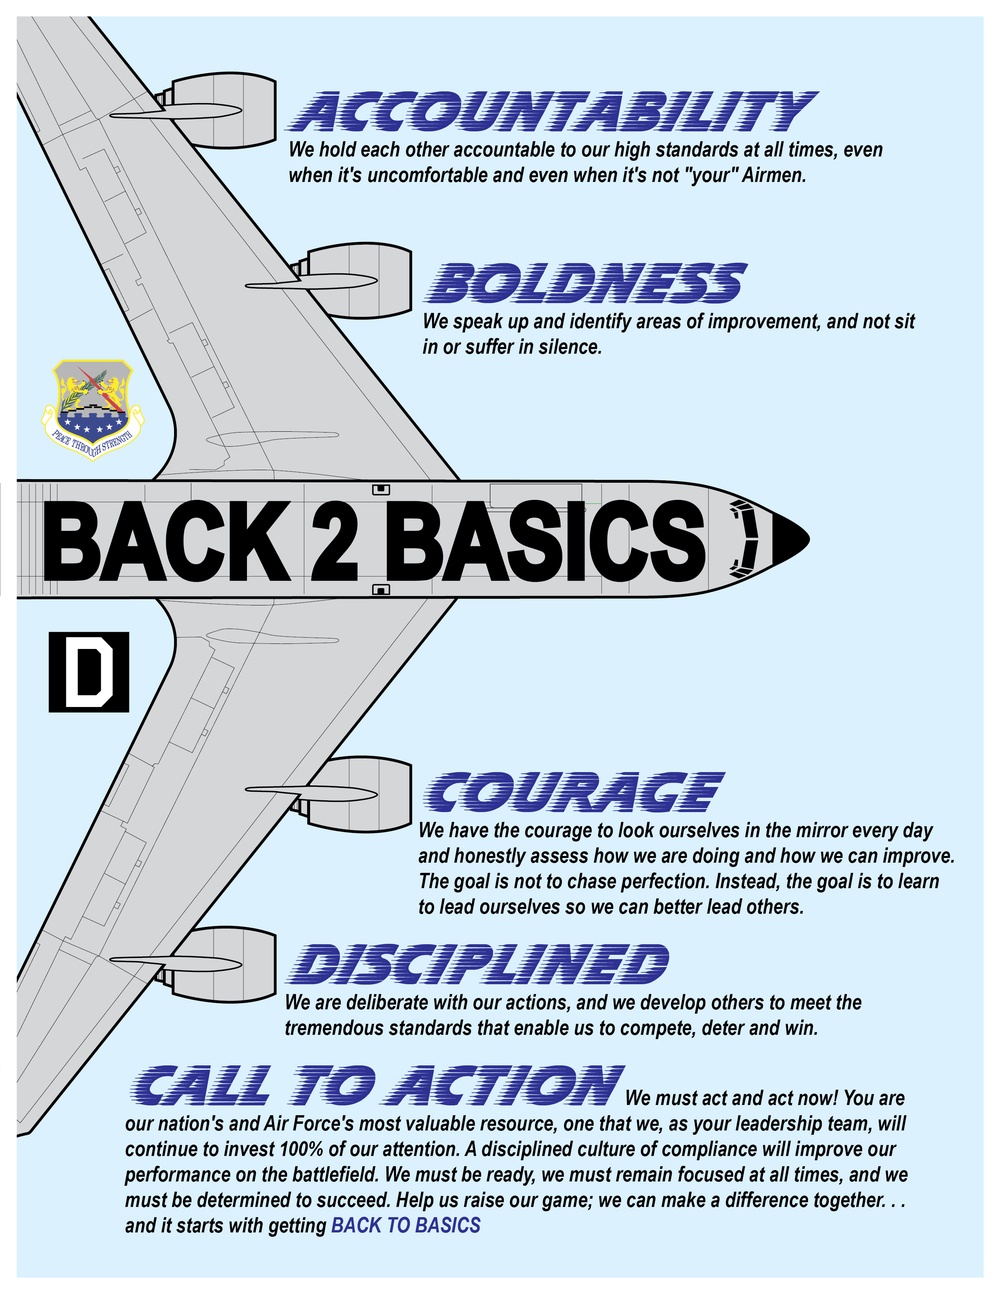 Back 2 Basics info poster